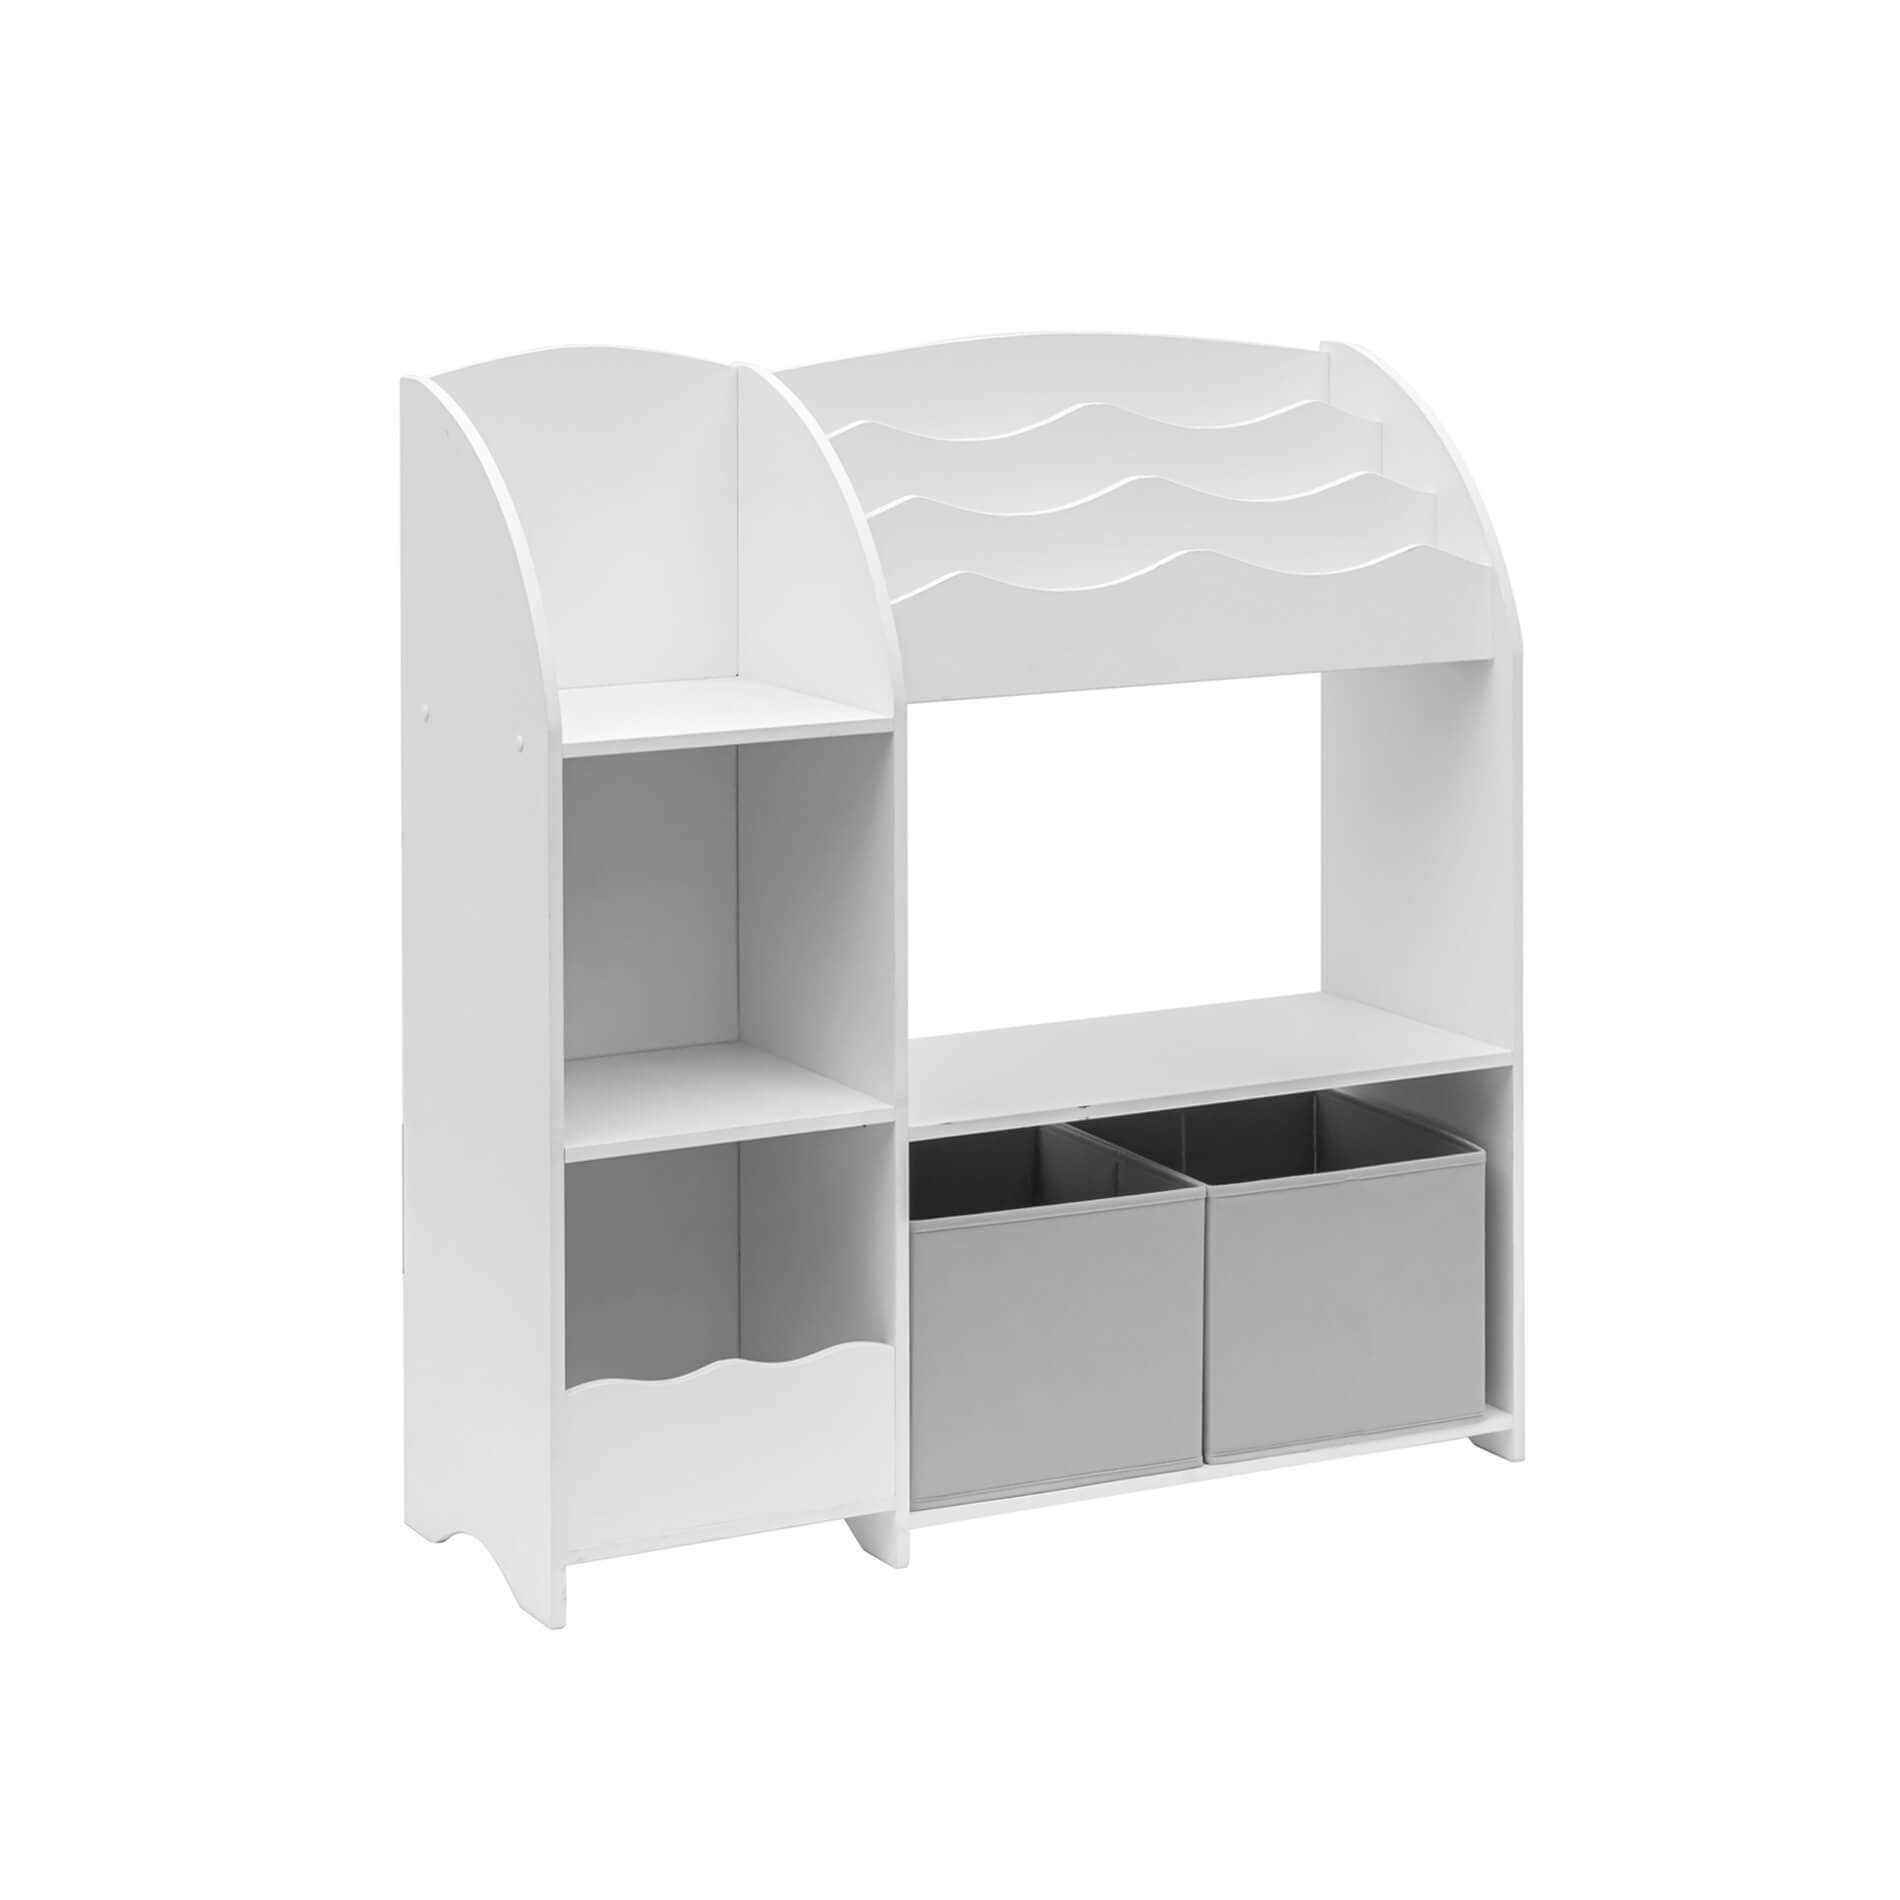 Mueble organizador 4 espacios horizontal / Blanco